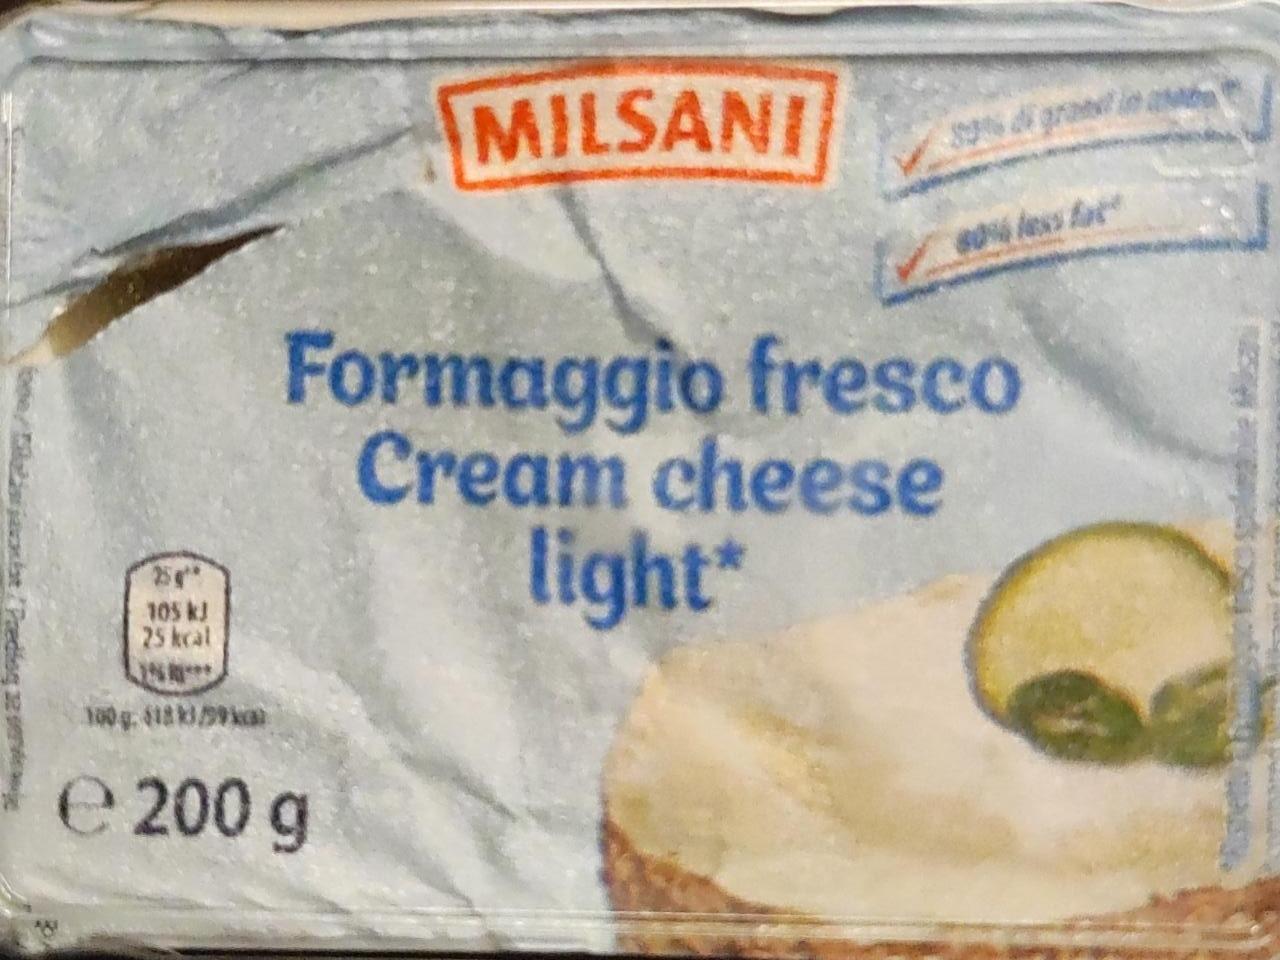 Fotografie - Formaggio fresco cream cheese light Milsani